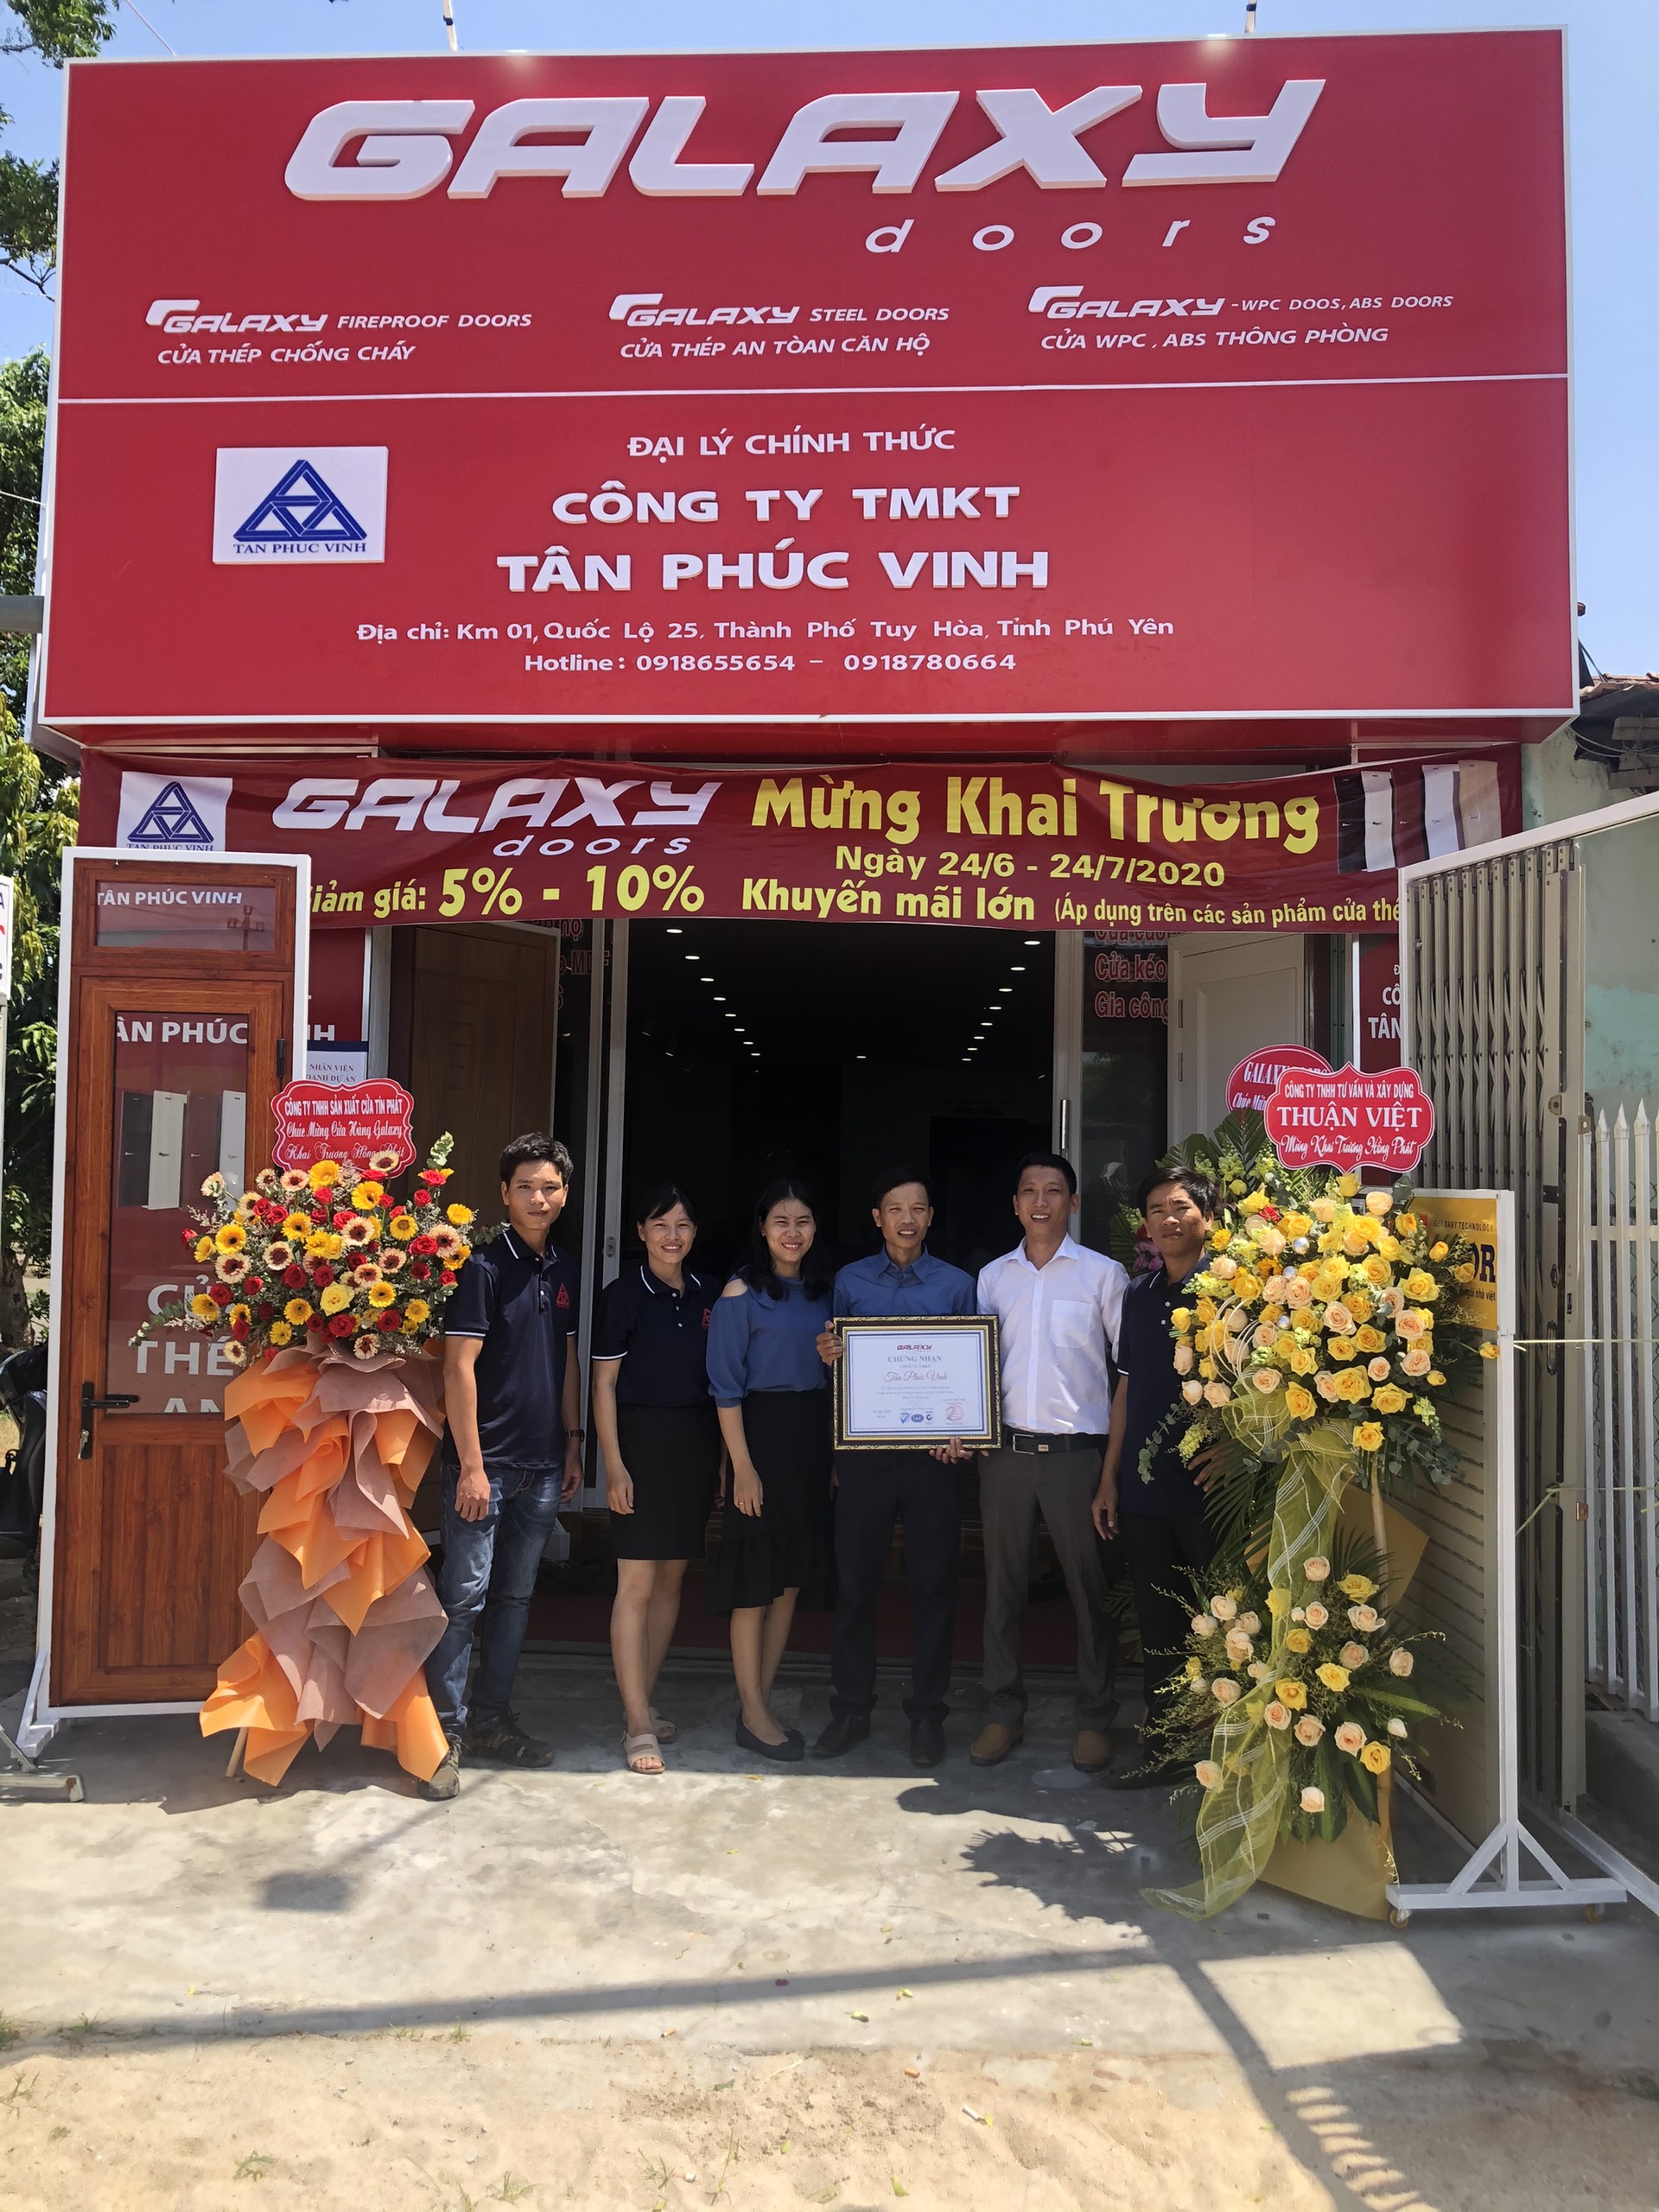 Galaxy Door khai trương Trung tâm phân phối Tân Phúc Vinh tại Tuy Hòa